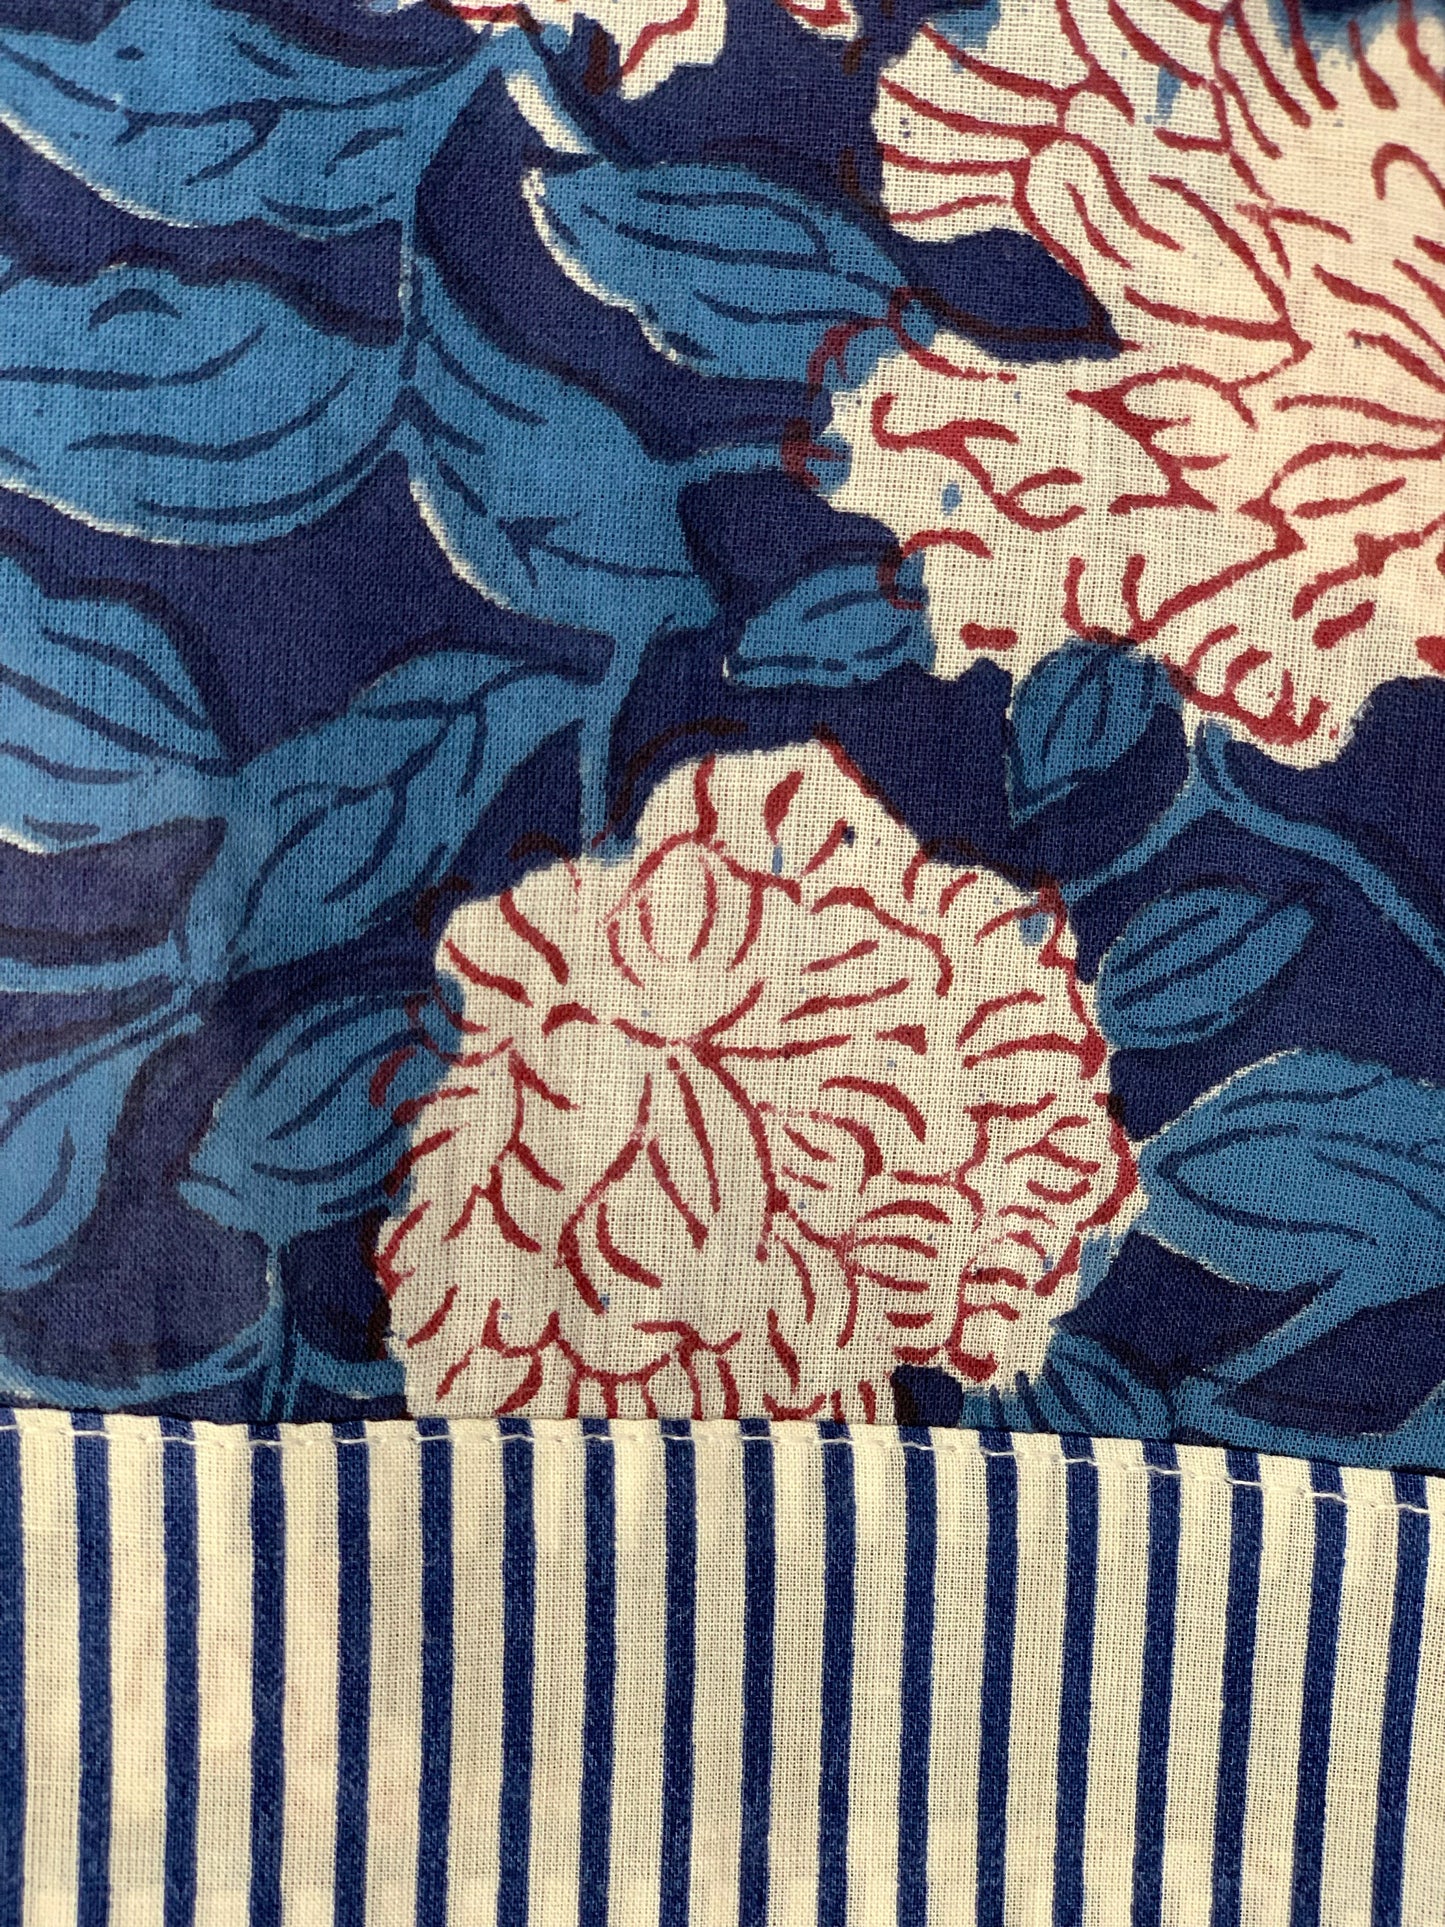 Bata kimono · Algodón puro estampado block print artesanal en India · Bata novia · Bata dama honor · Kimono boho · Azul flores blanco